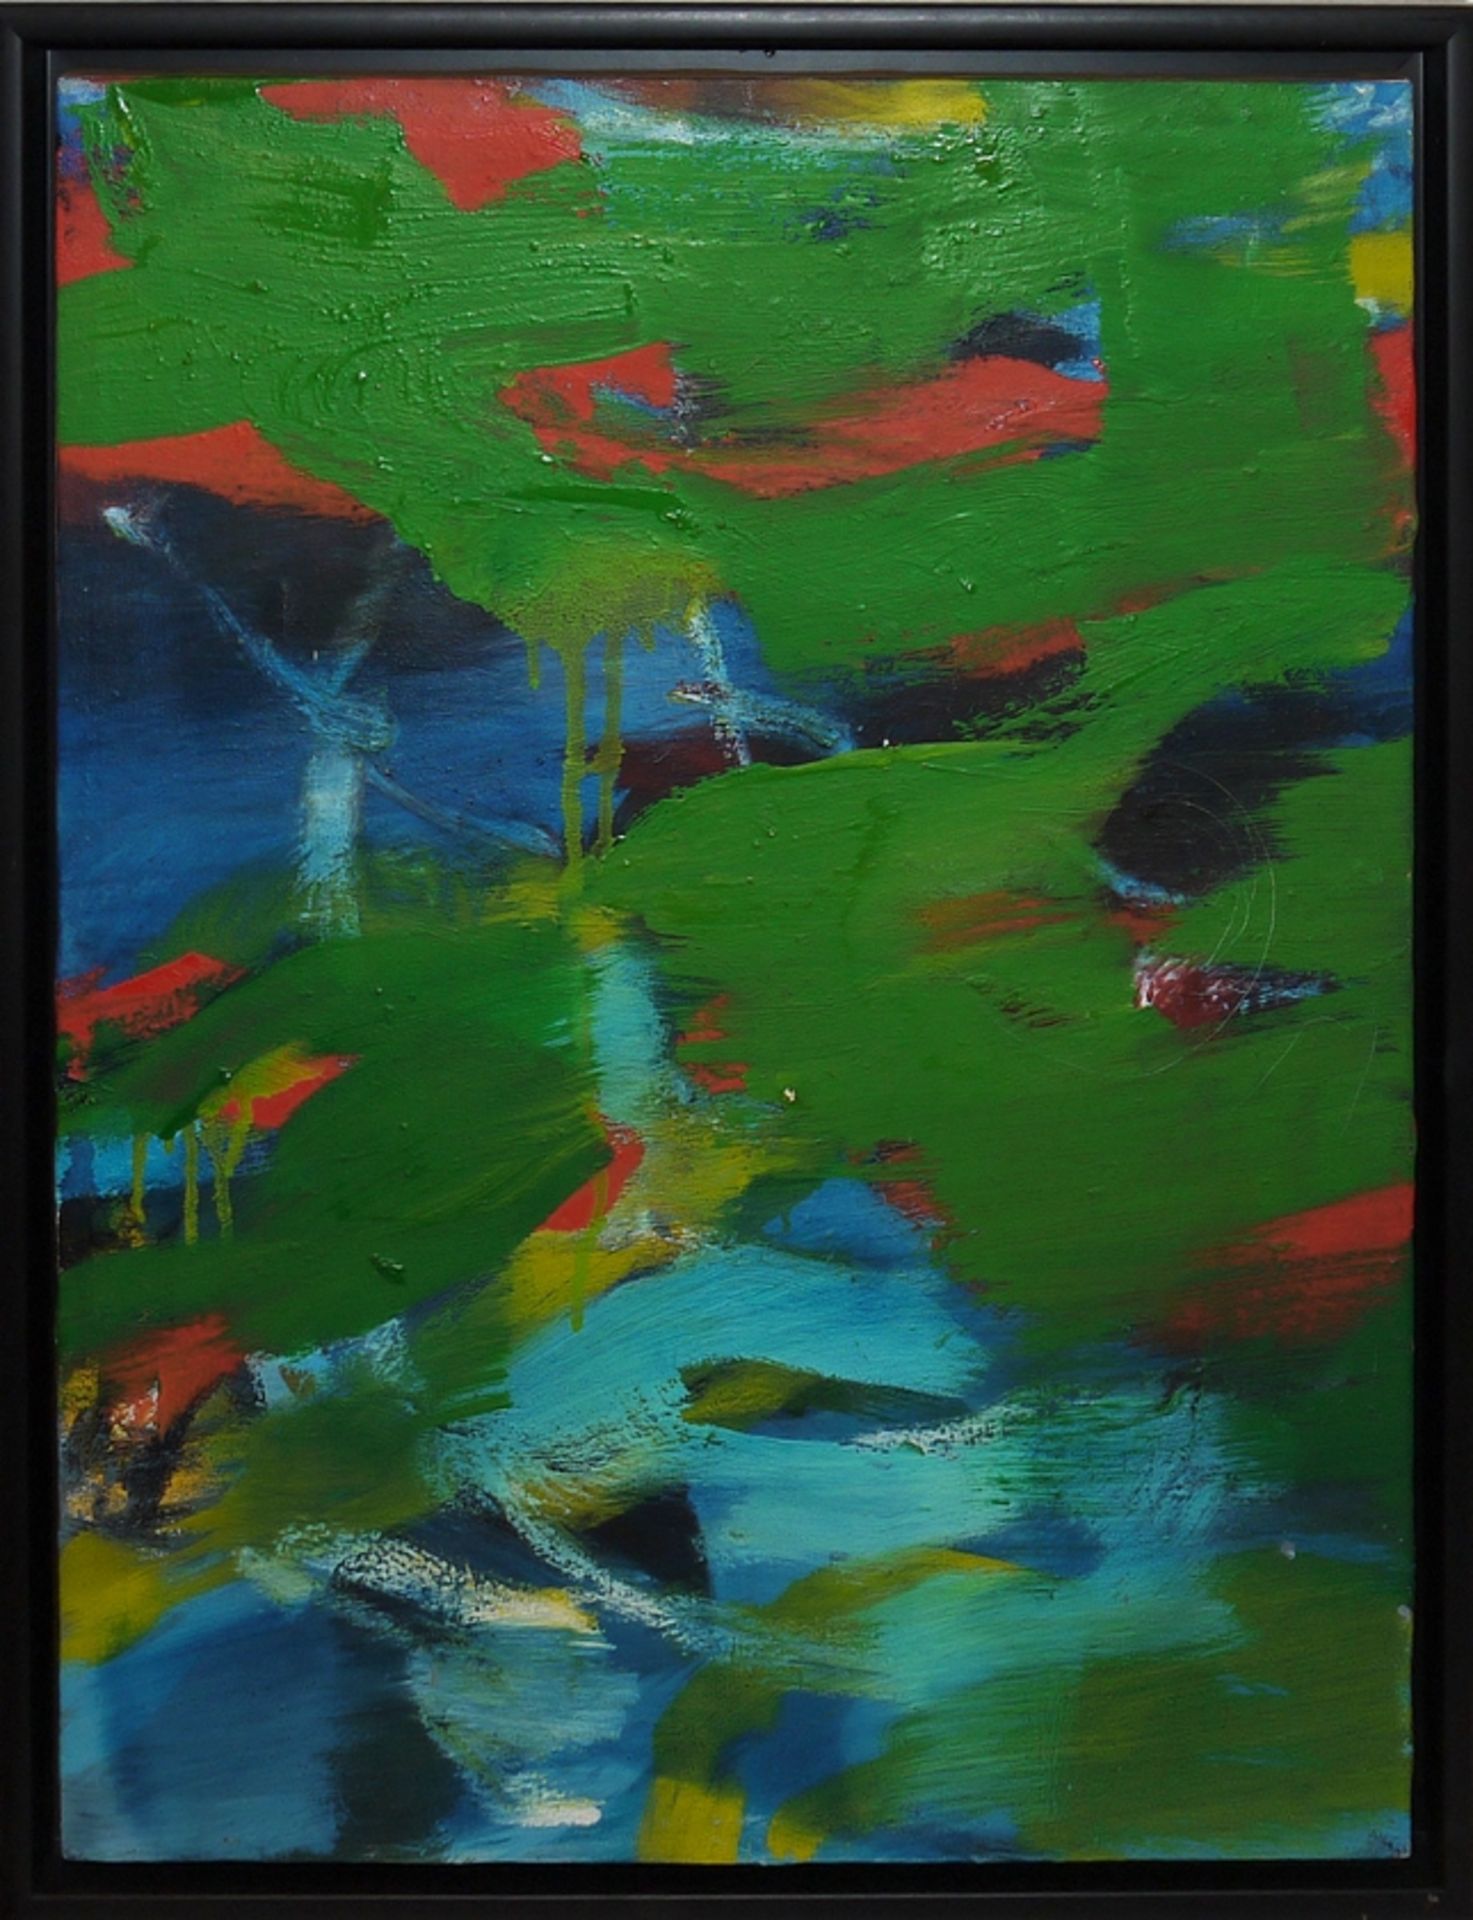 Jung in Kim, Abstrakte Kompositionen, 4 Ölgemälde aus süddeutscher Unternehmens-Sammlung, alle in G